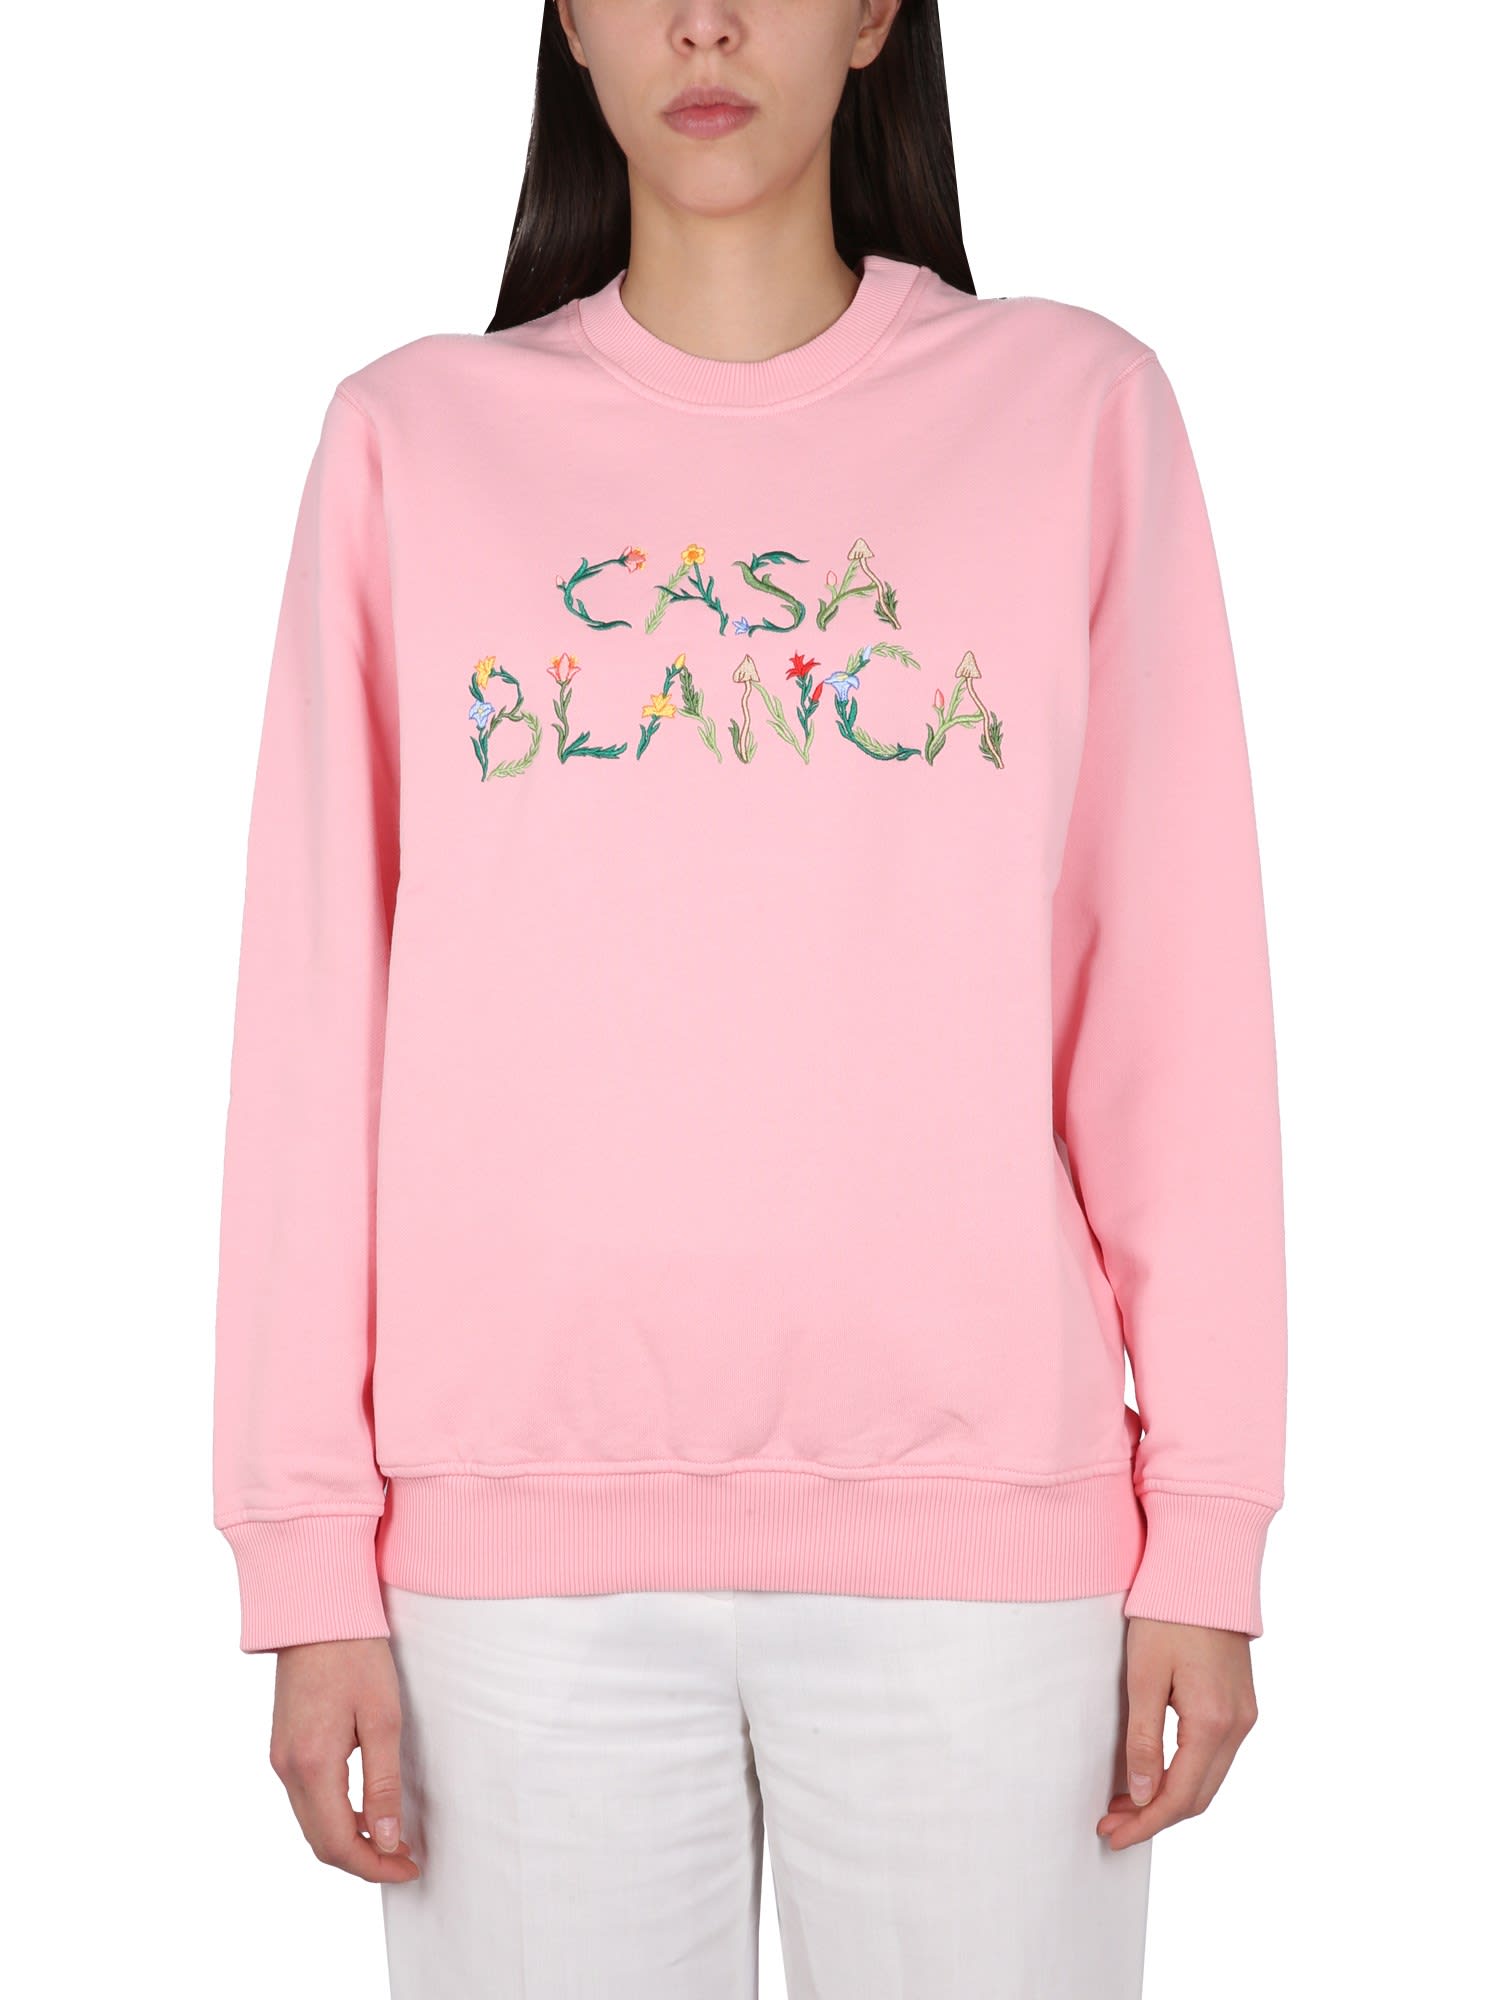 Casablanca Crewneck Sweatshirt